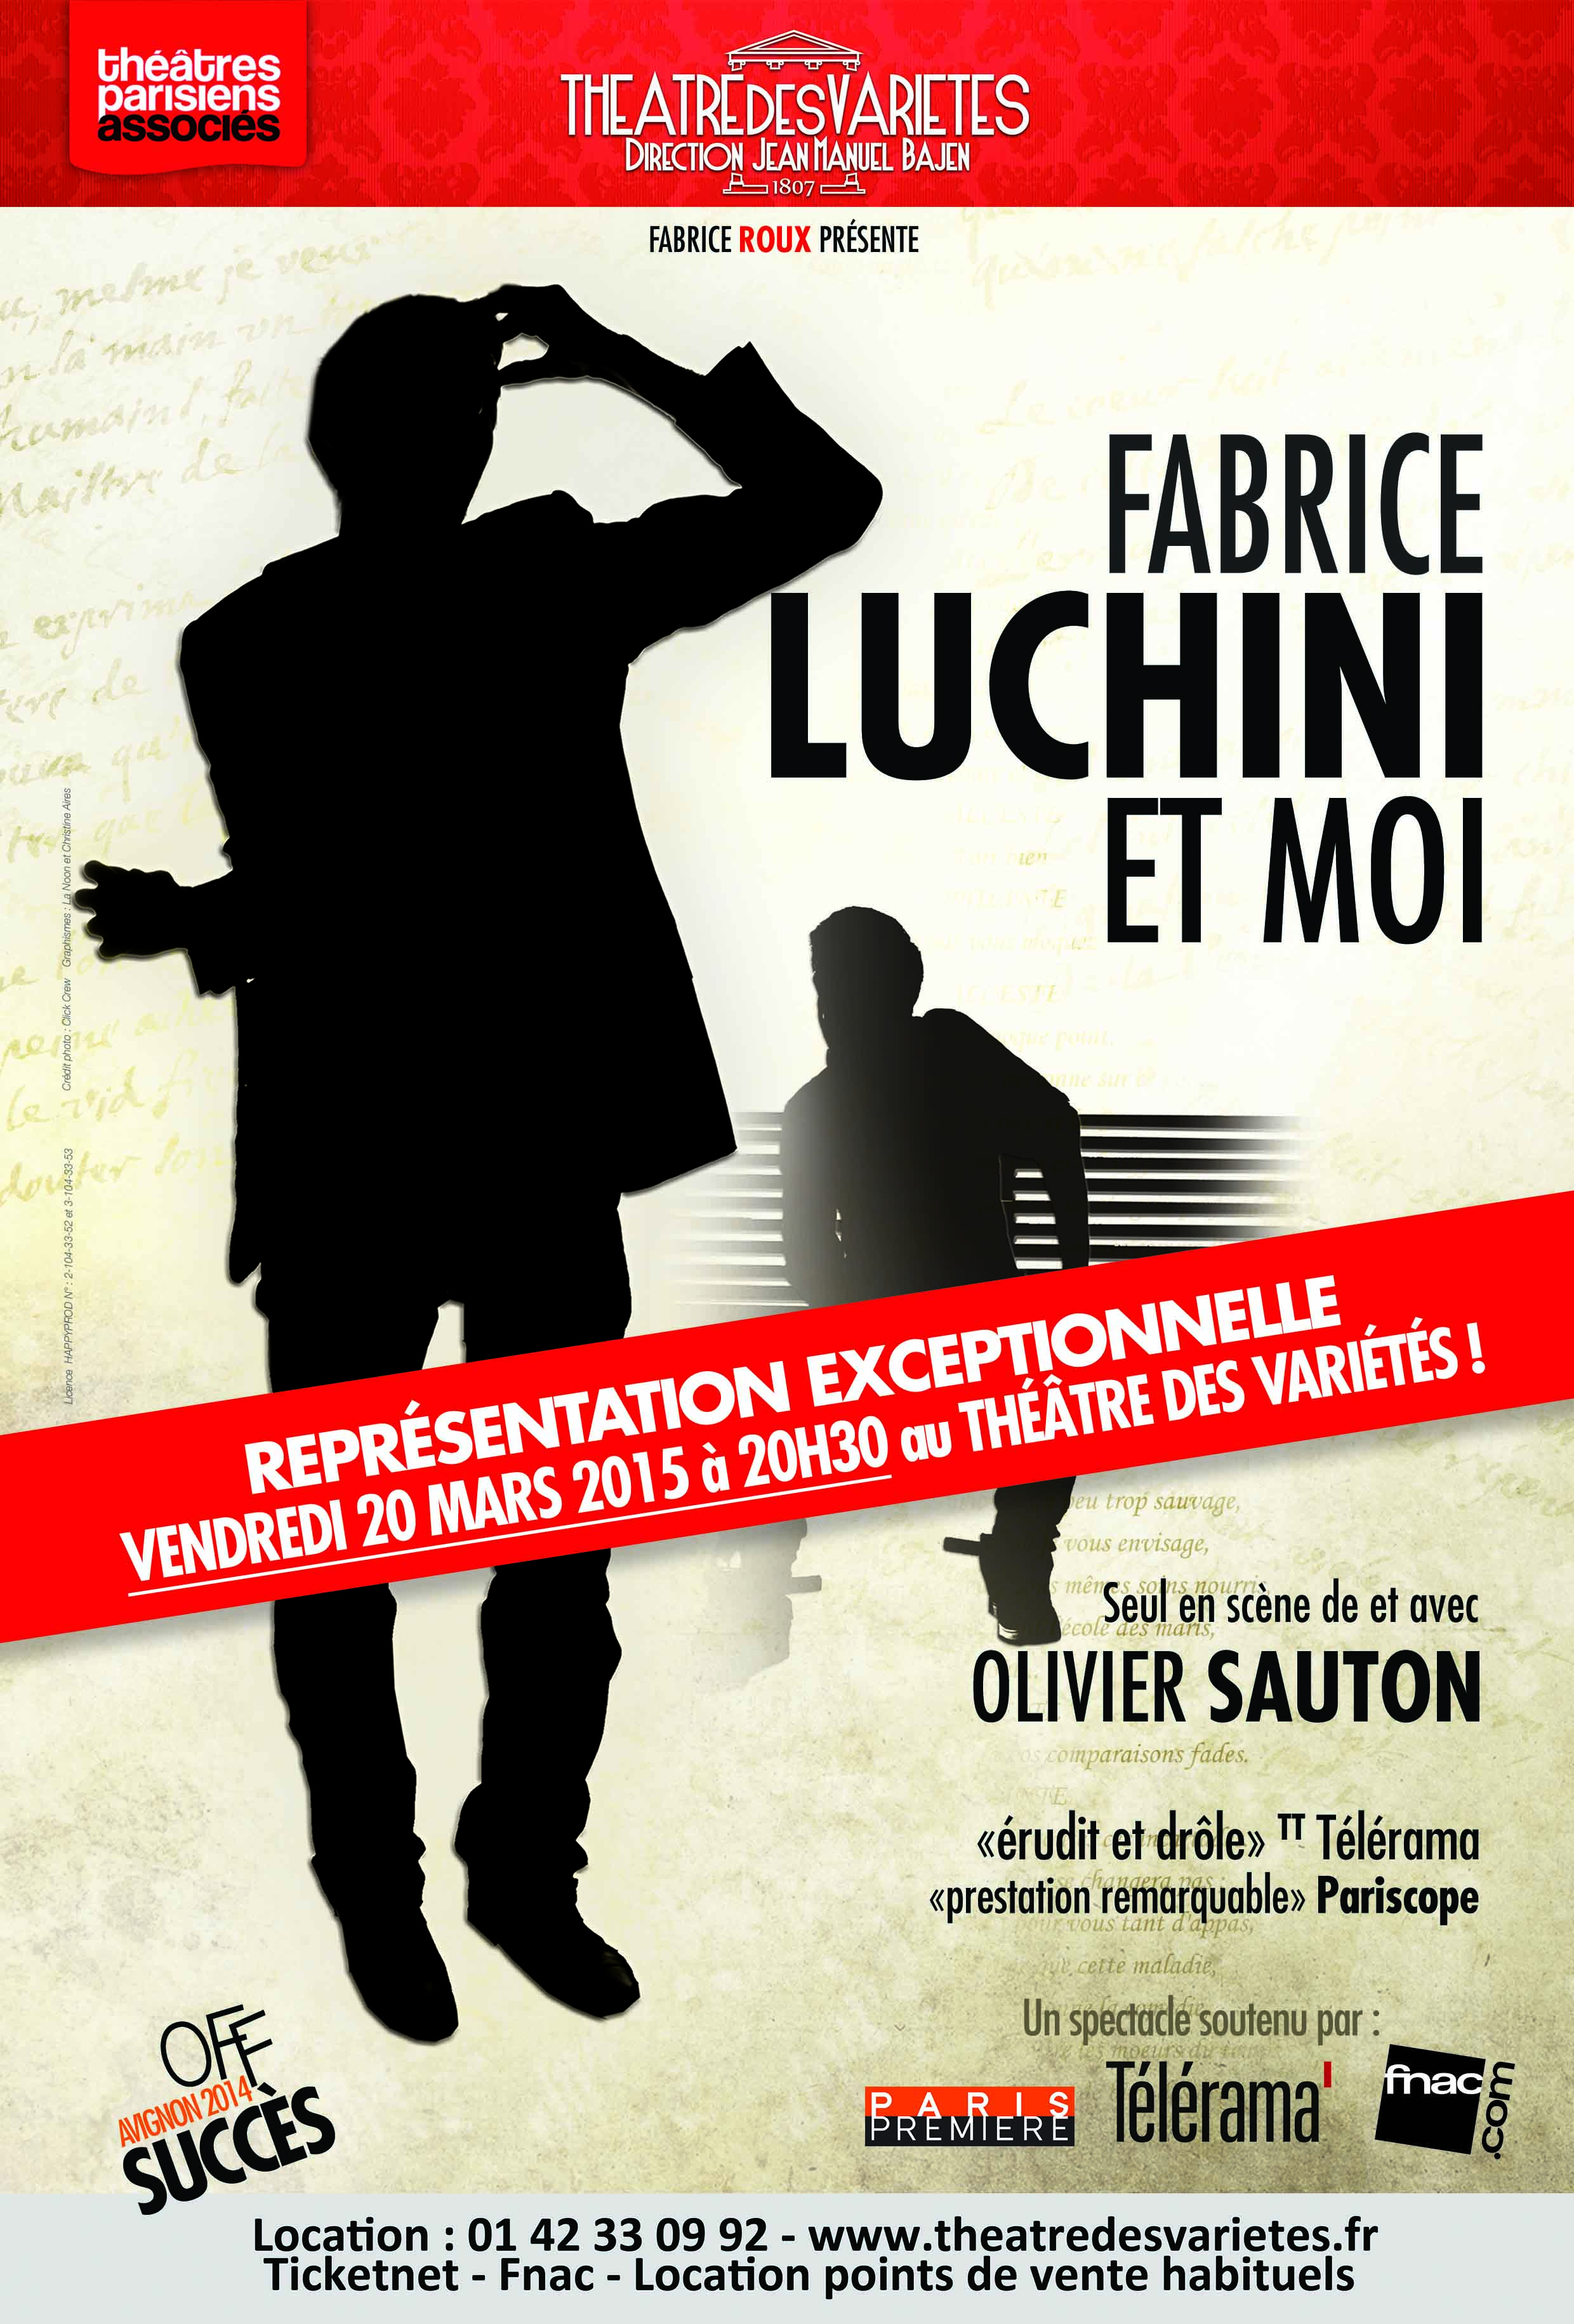 Fabrice Luchini et moi - Théâtre des Variétés